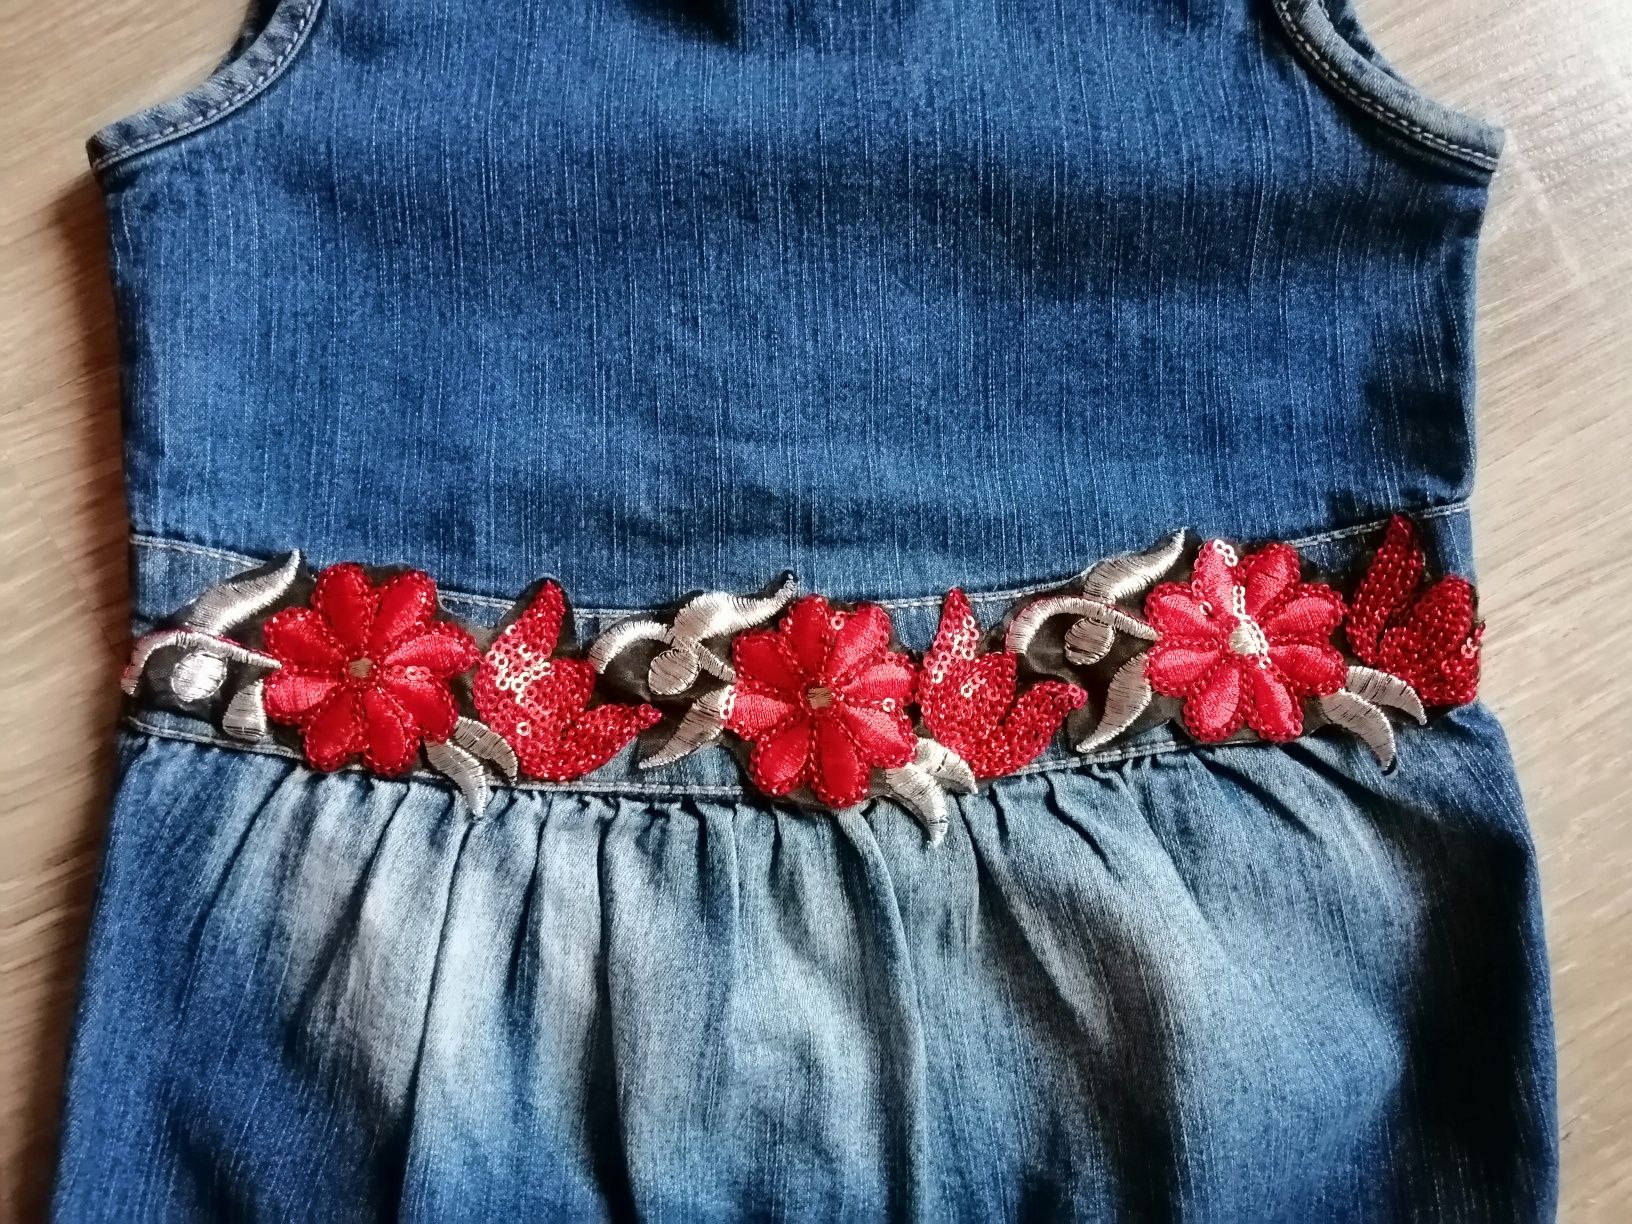 Джинсовый сарафан  для девочки. 3 - 6 лет.  Платье в украинском стиле.